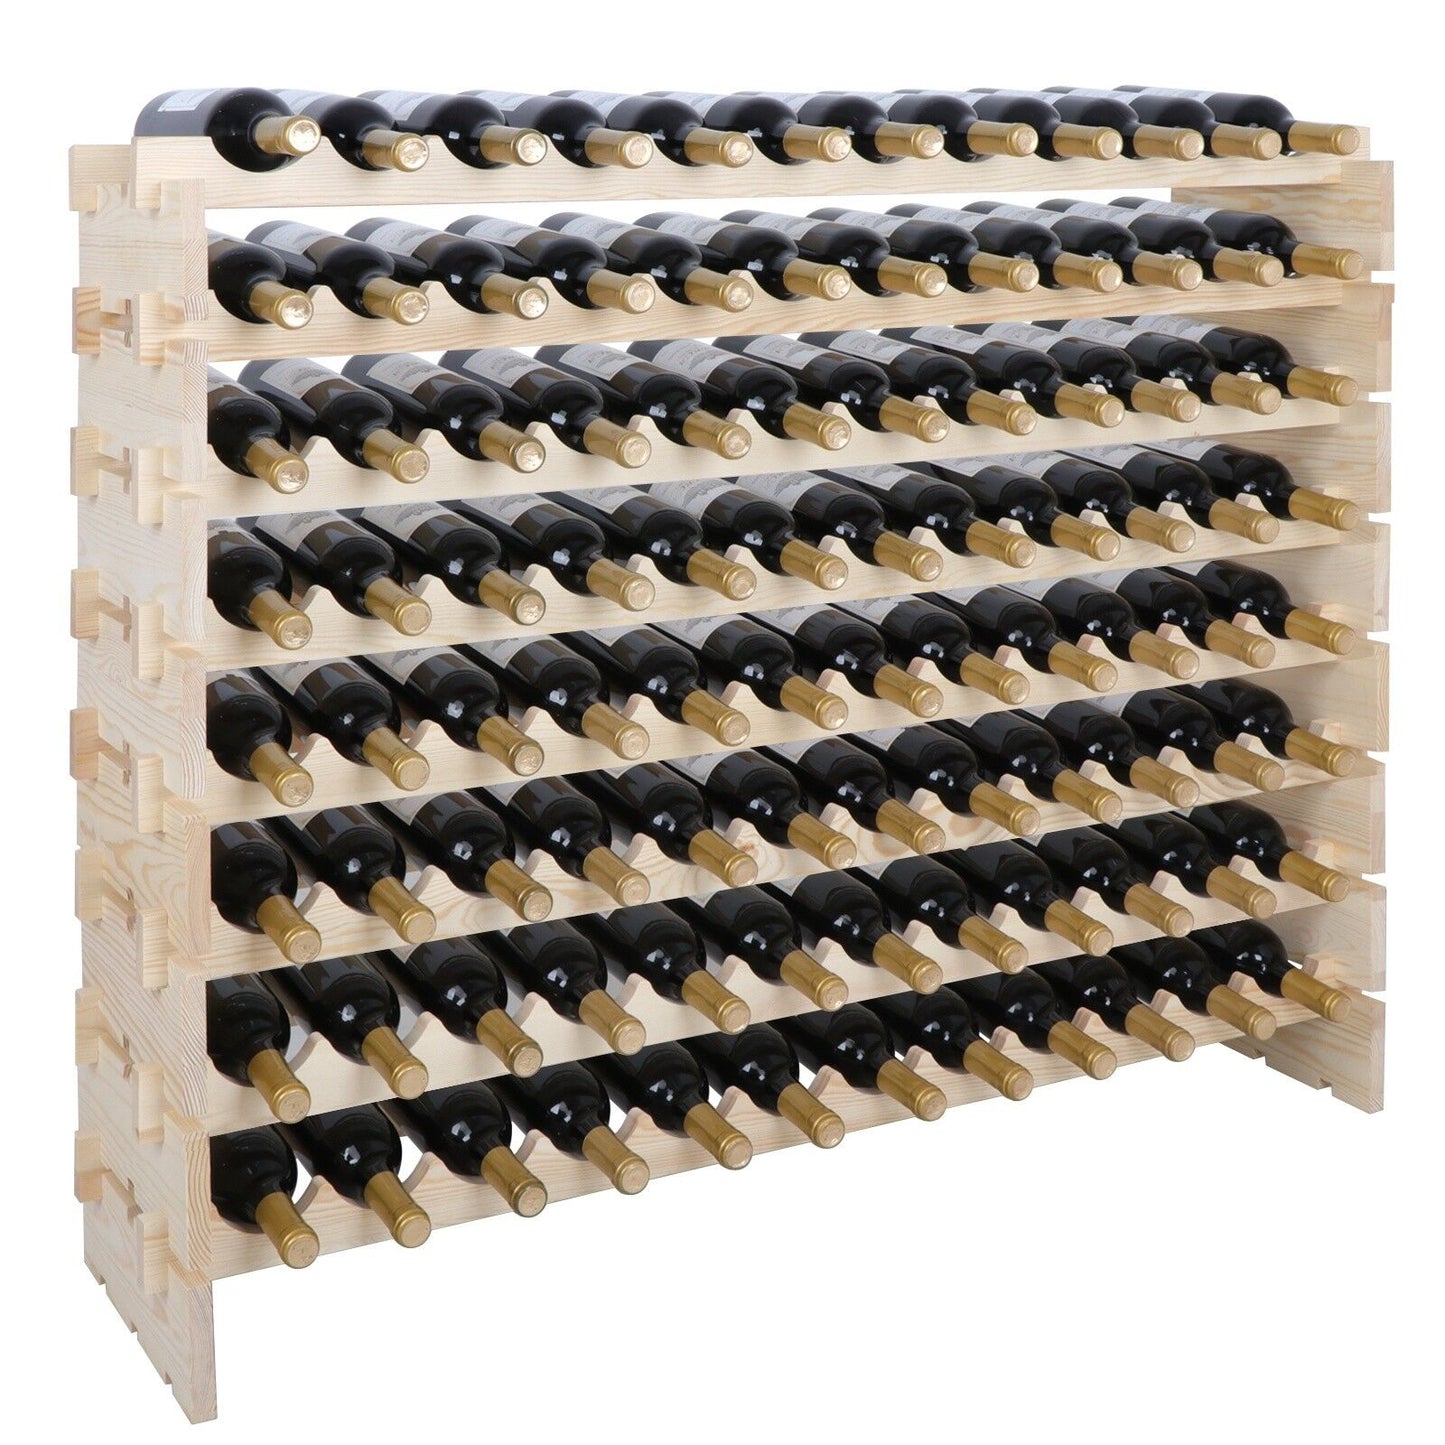 96 Bottles Holder Wine Rack Stackable Storage Solid Wood Display Shelves 8 Tier